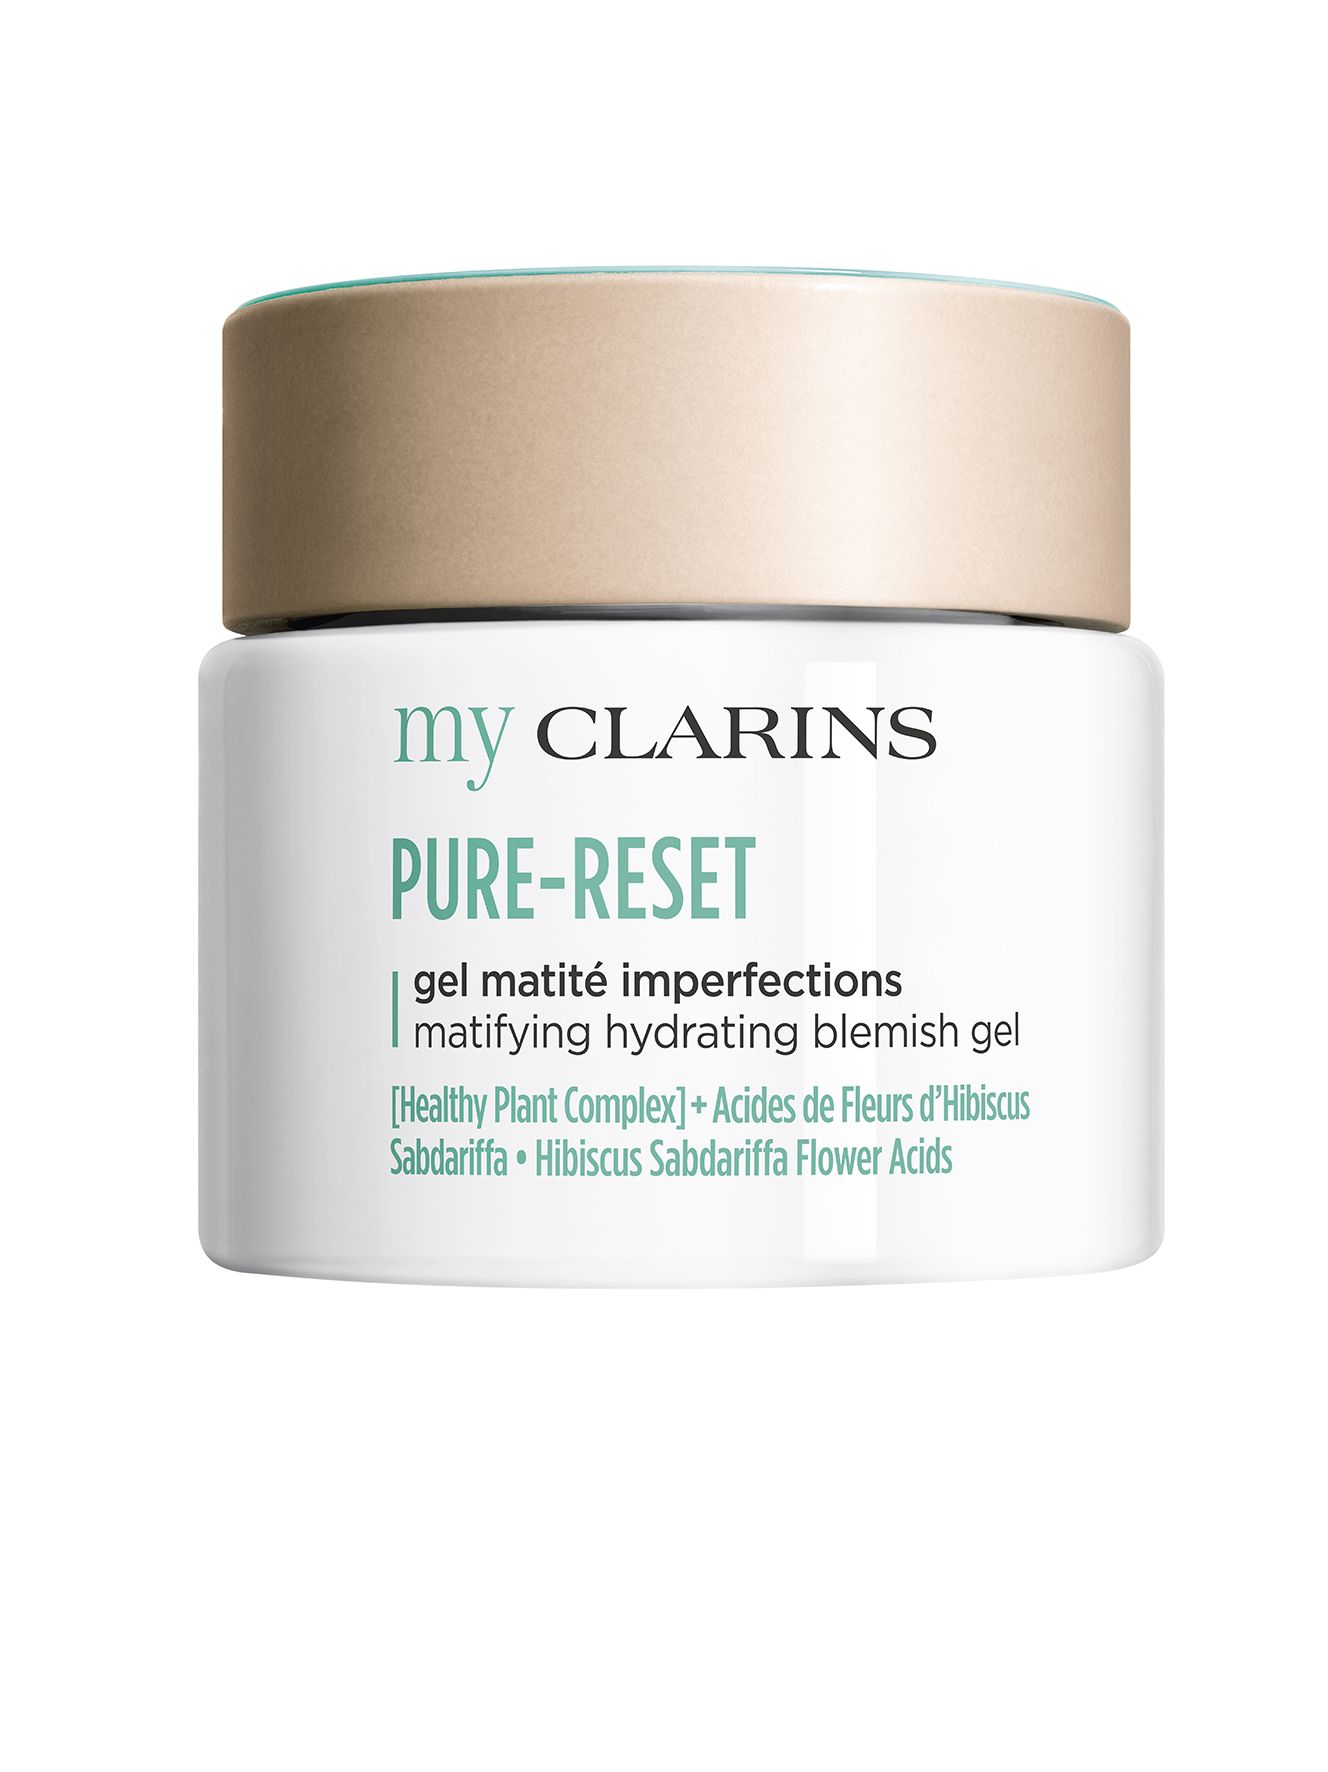 Myclarins Pure Reset Frosted Gel Matité alisa la textura de la piel, reduce los brillos y combate las imperfecciones de forma visible